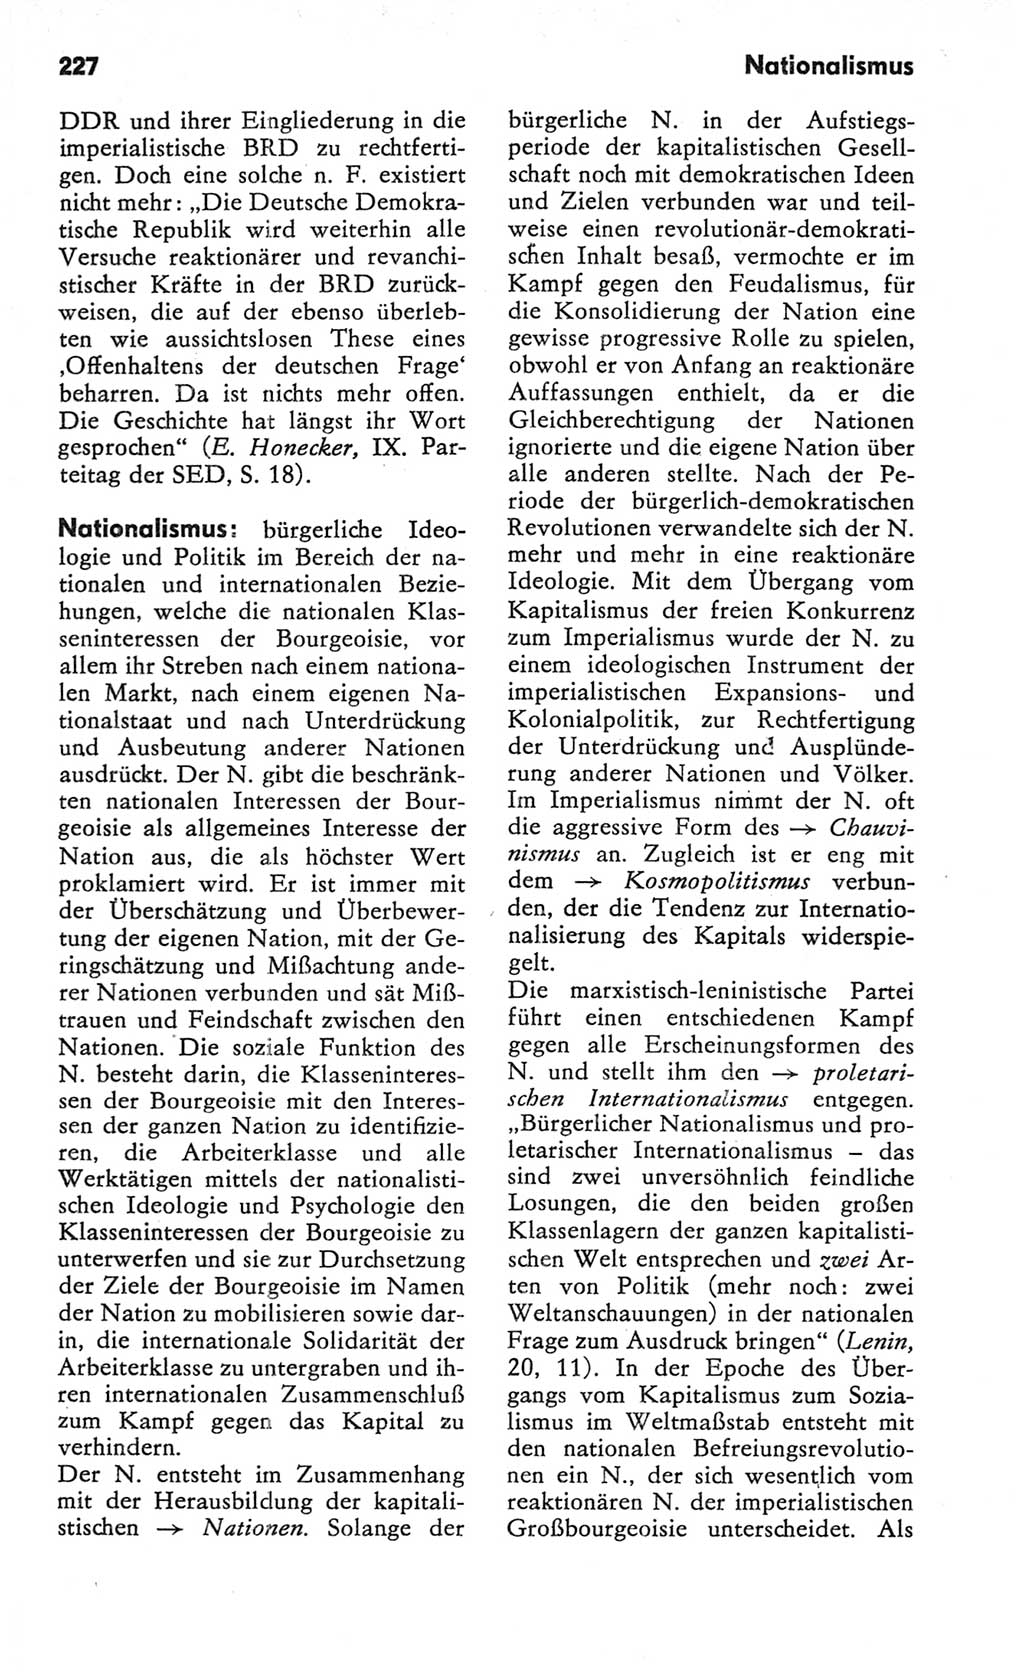 Kleines Wörterbuch der marxistisch-leninistischen Philosophie [Deutsche Demokratische Republik (DDR)] 1982, Seite 227 (Kl. Wb. ML Phil. DDR 1982, S. 227)